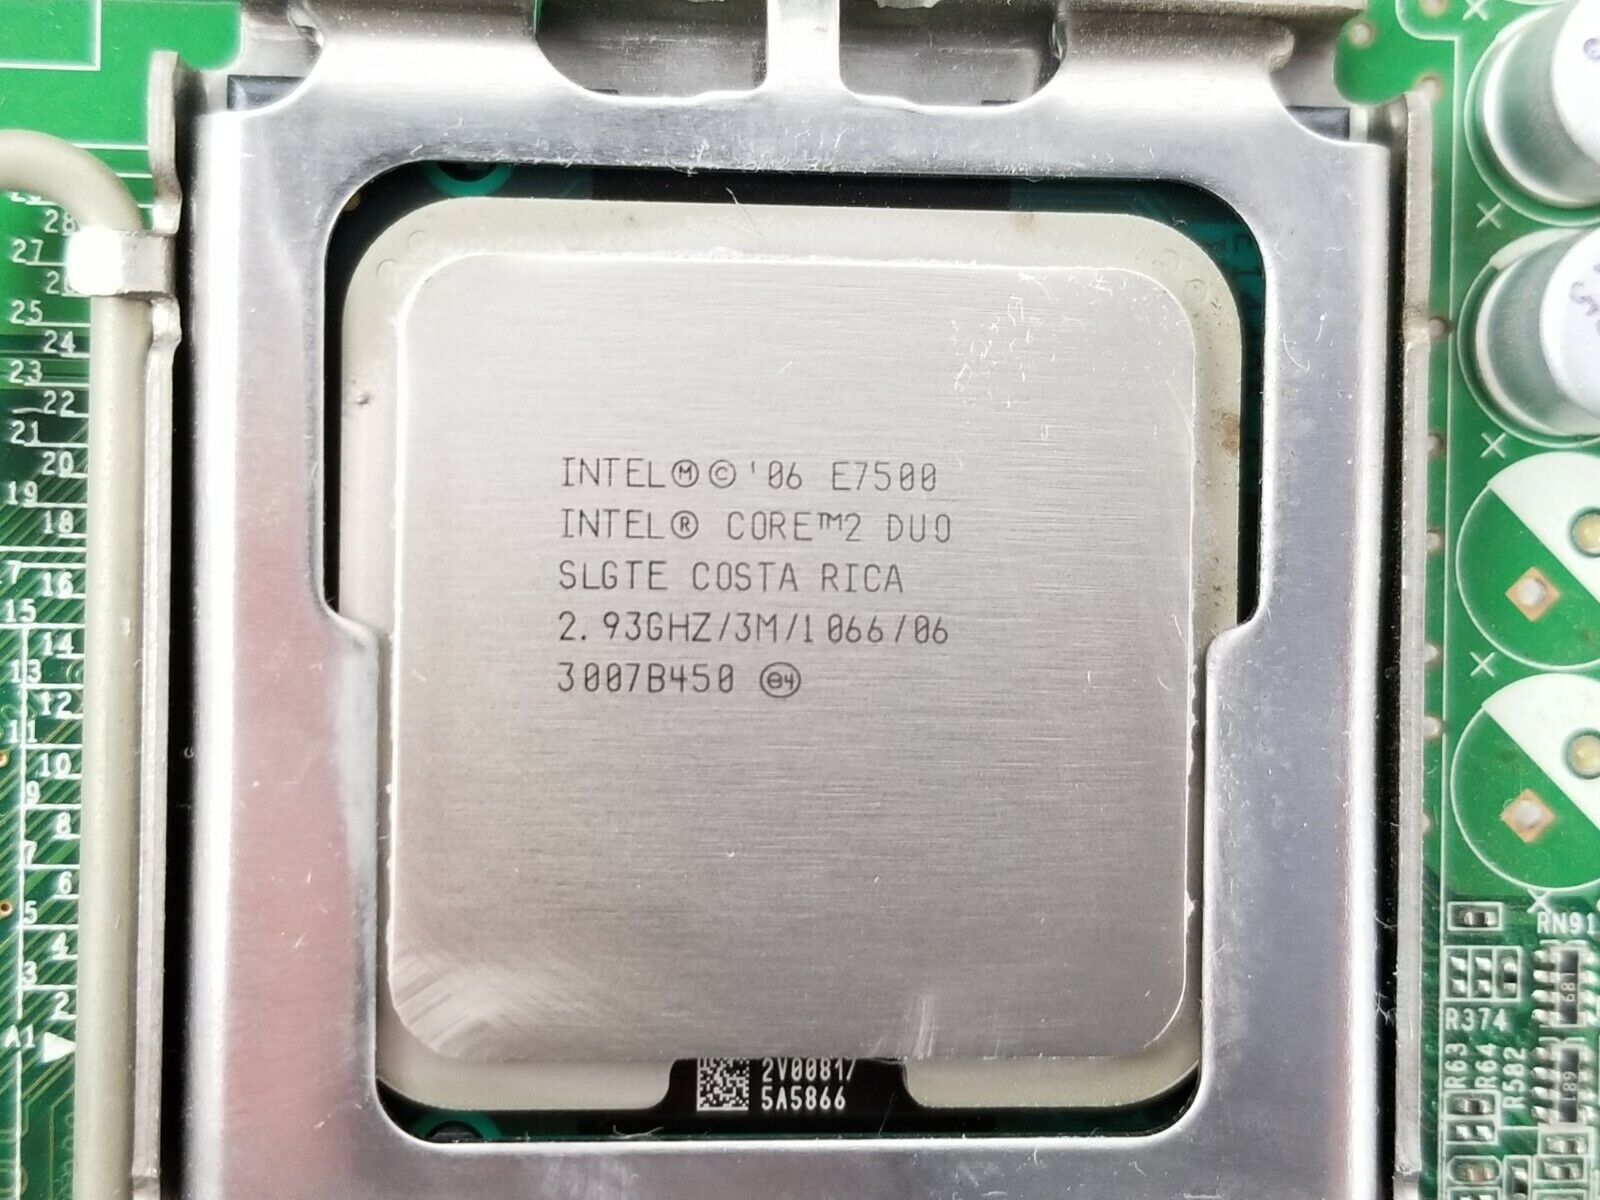 Dell 200DY Optiplex 780 DT Intel Core 2 Duo E7500 2.93GHz 2GB RAM